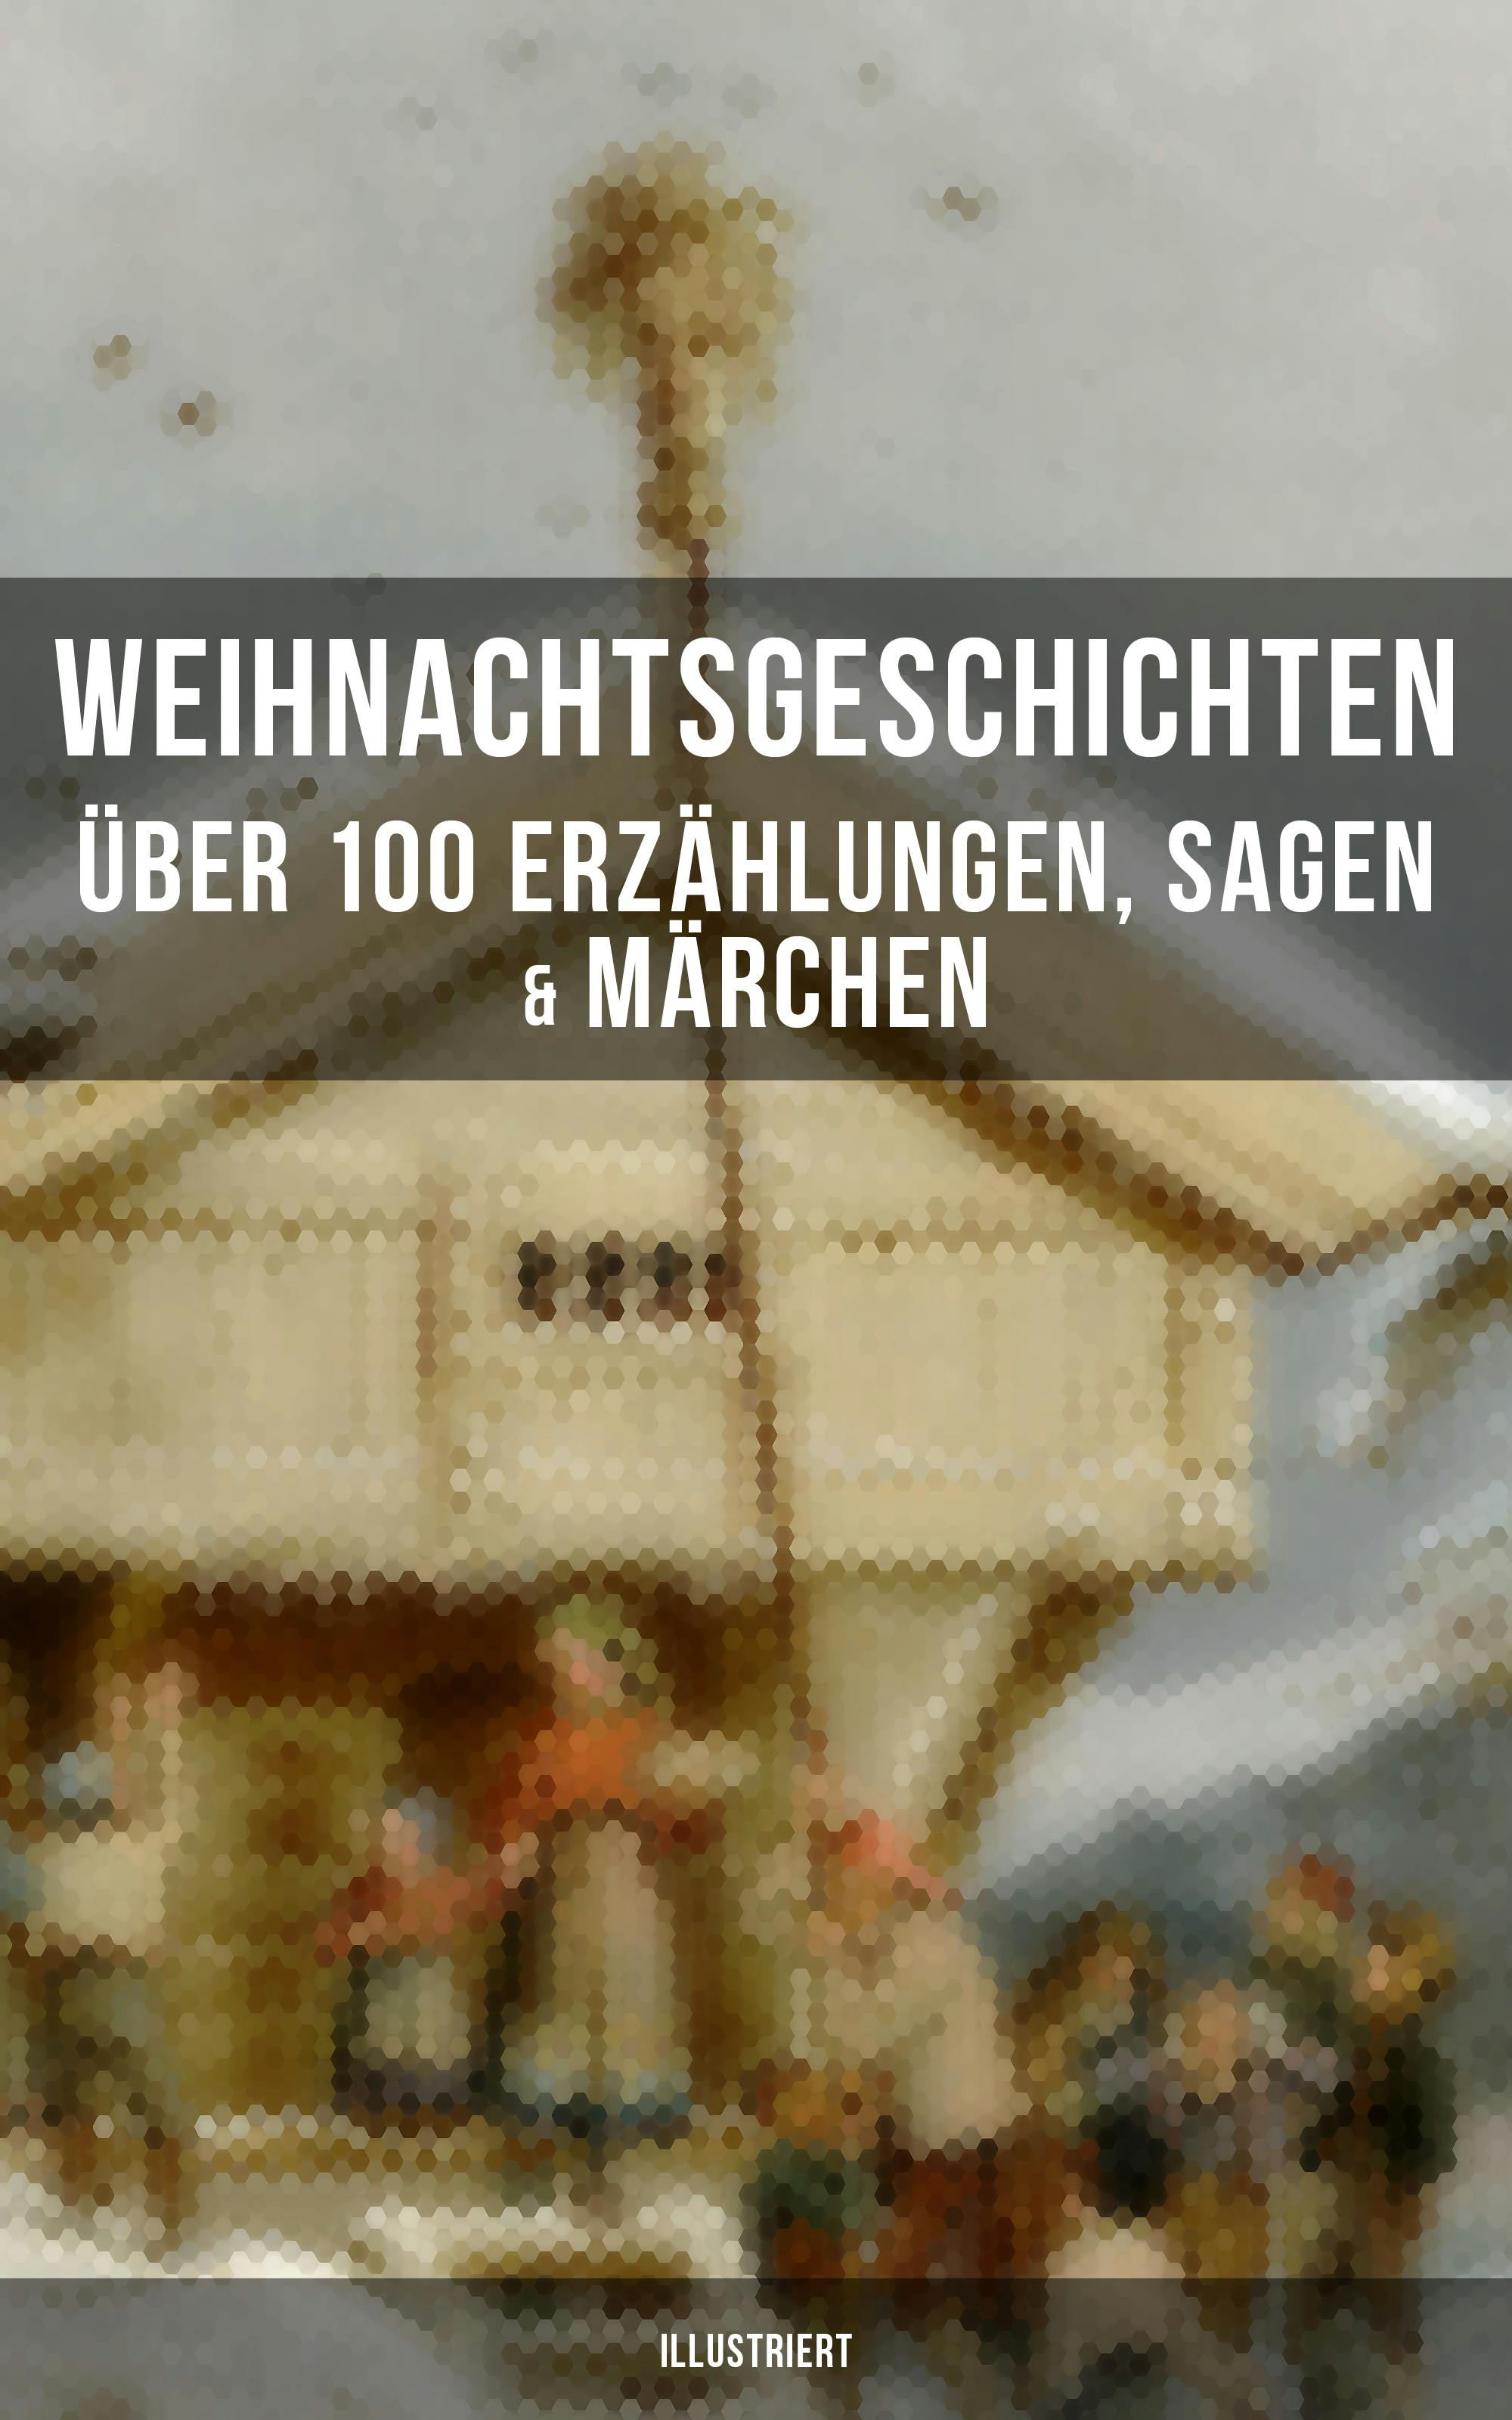 Weihnachtsgeschichten: Über 100 Erzählungen, Sagen & Märchen (Illustriert) - undefined